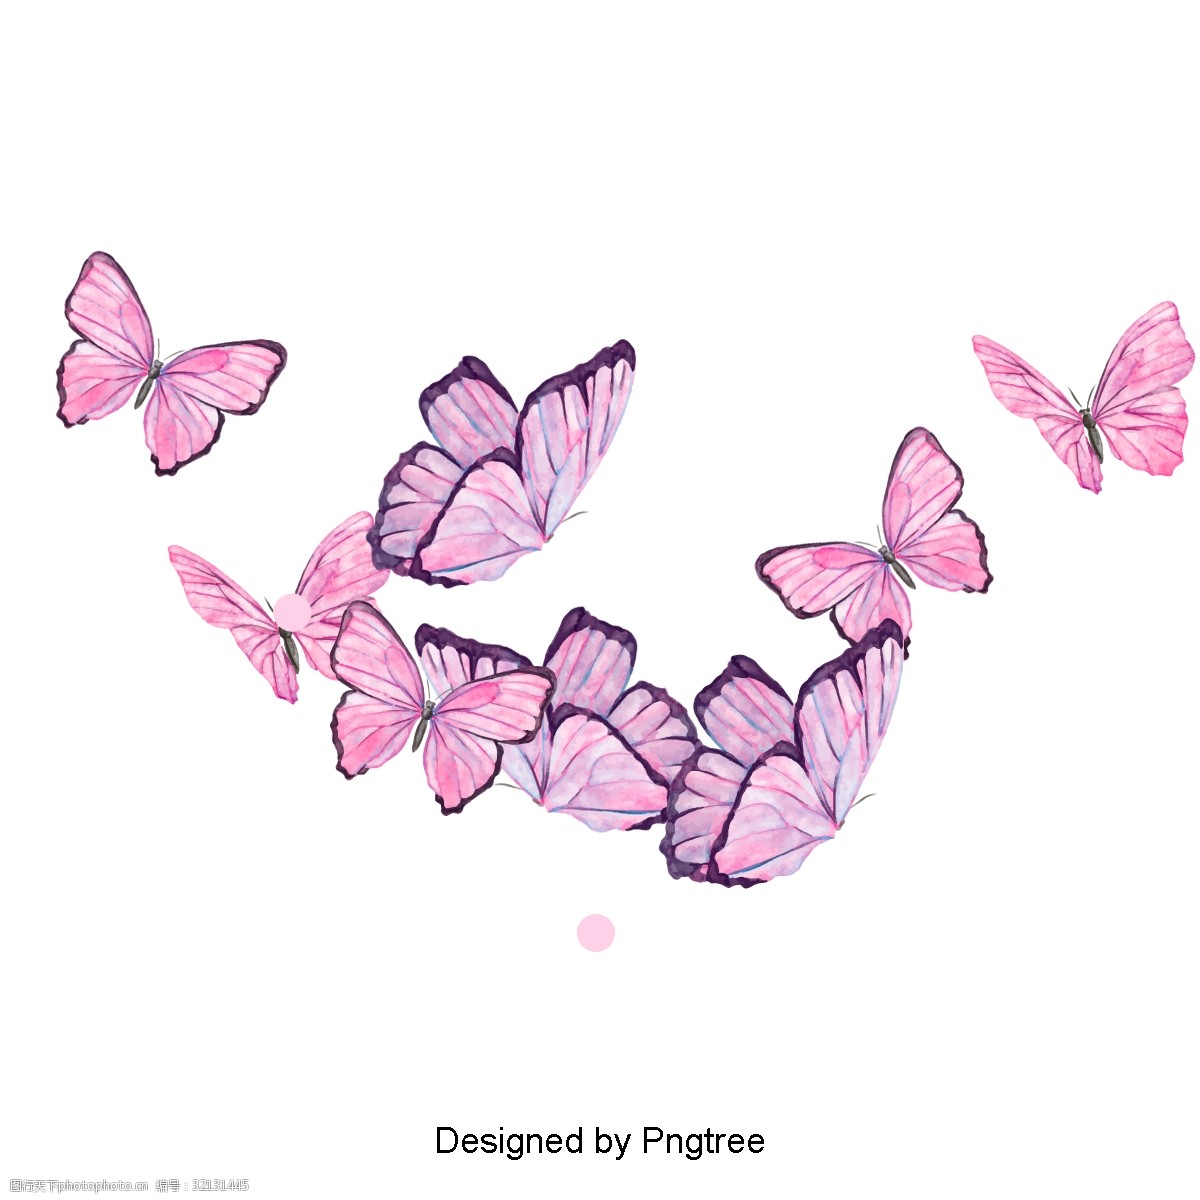 关键词:美丽卡通蝴蝶虫设计 卡通手绘蝴蝶昆虫美学浪漫图案花植物自然